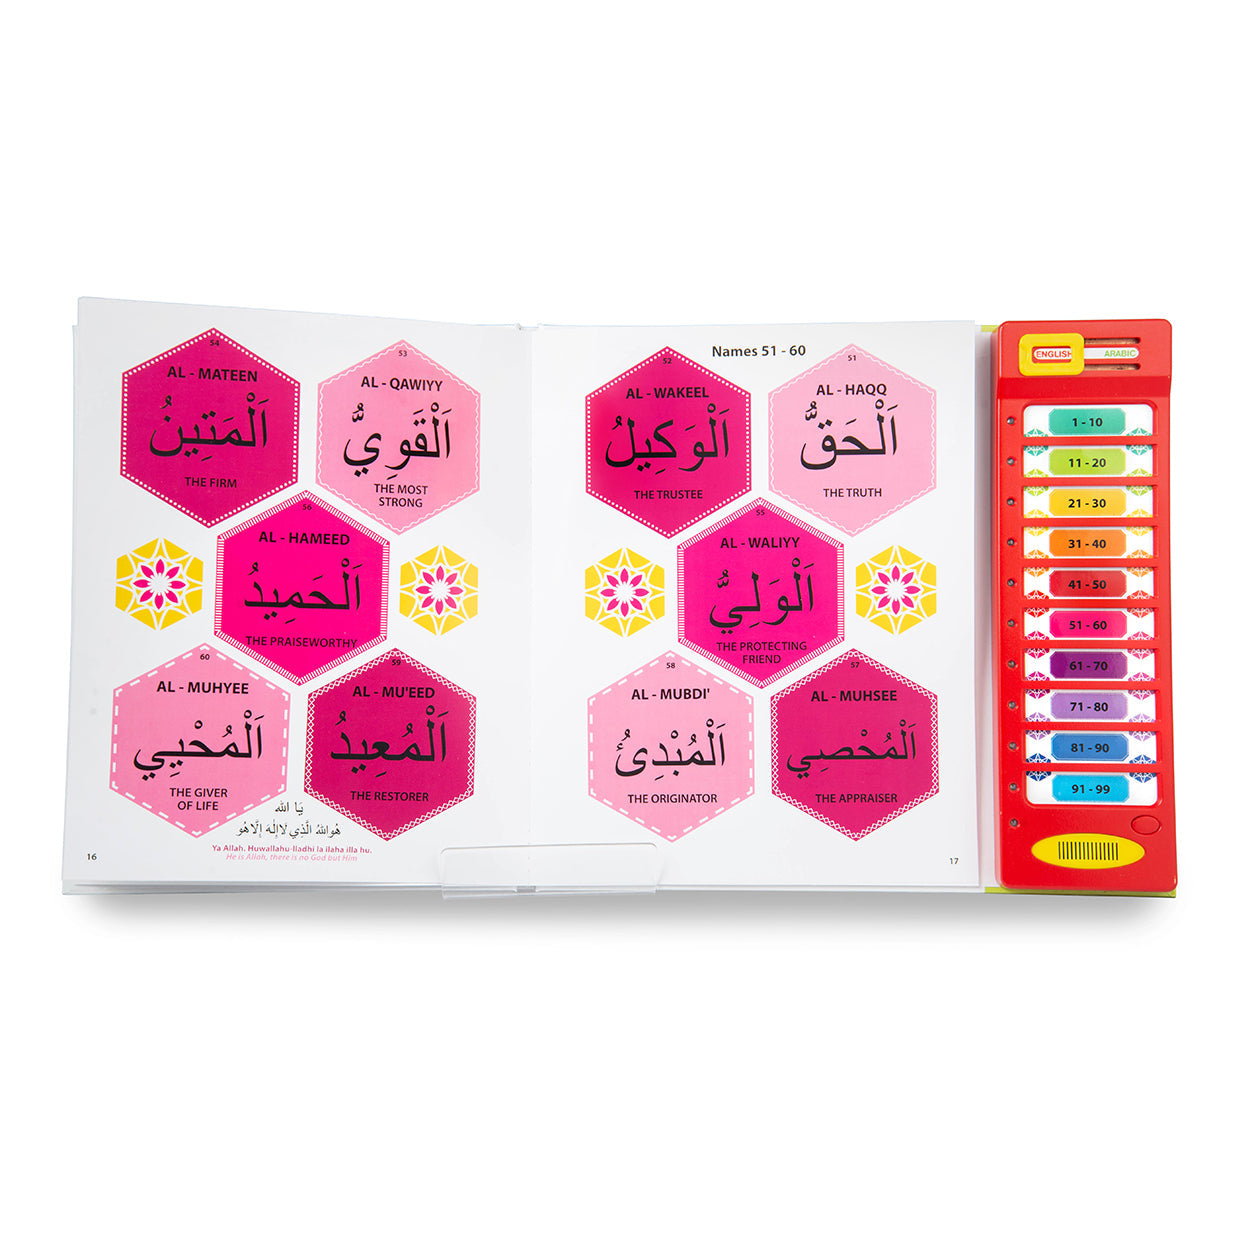 99 Names Of Allah Sound Book